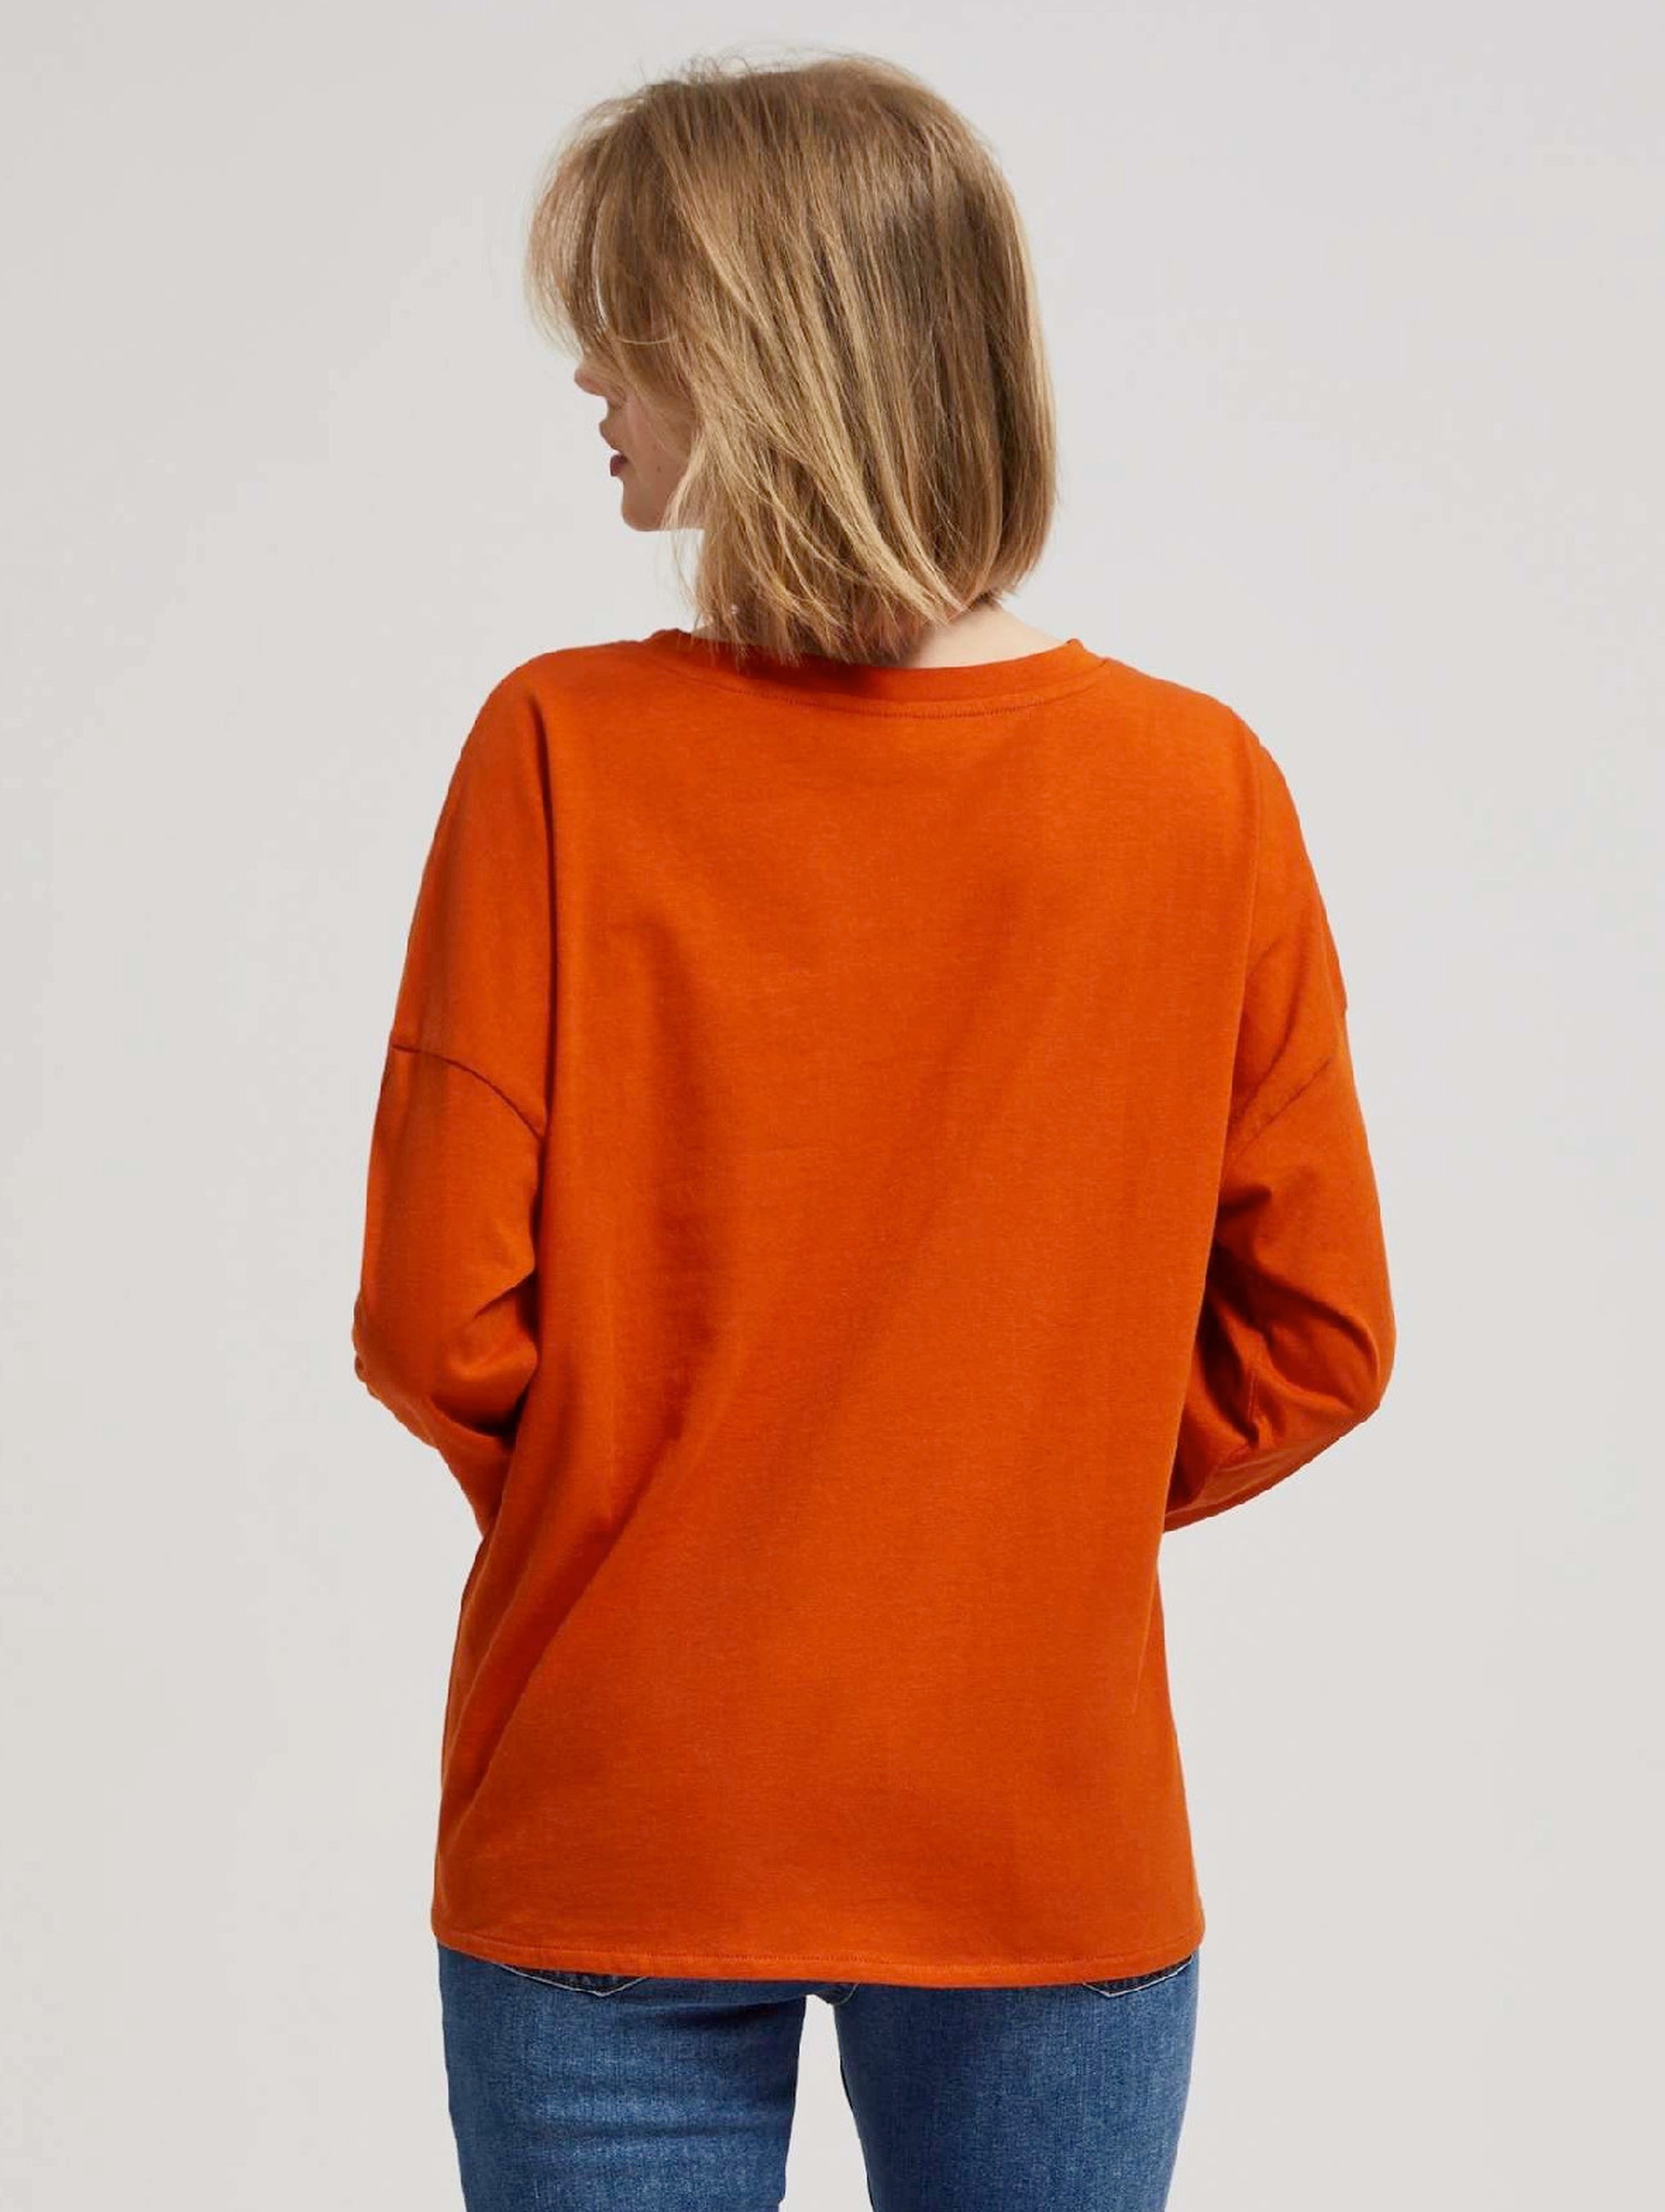 Damska bluzka pomarańczowa z długim rękawem i wiązaniem